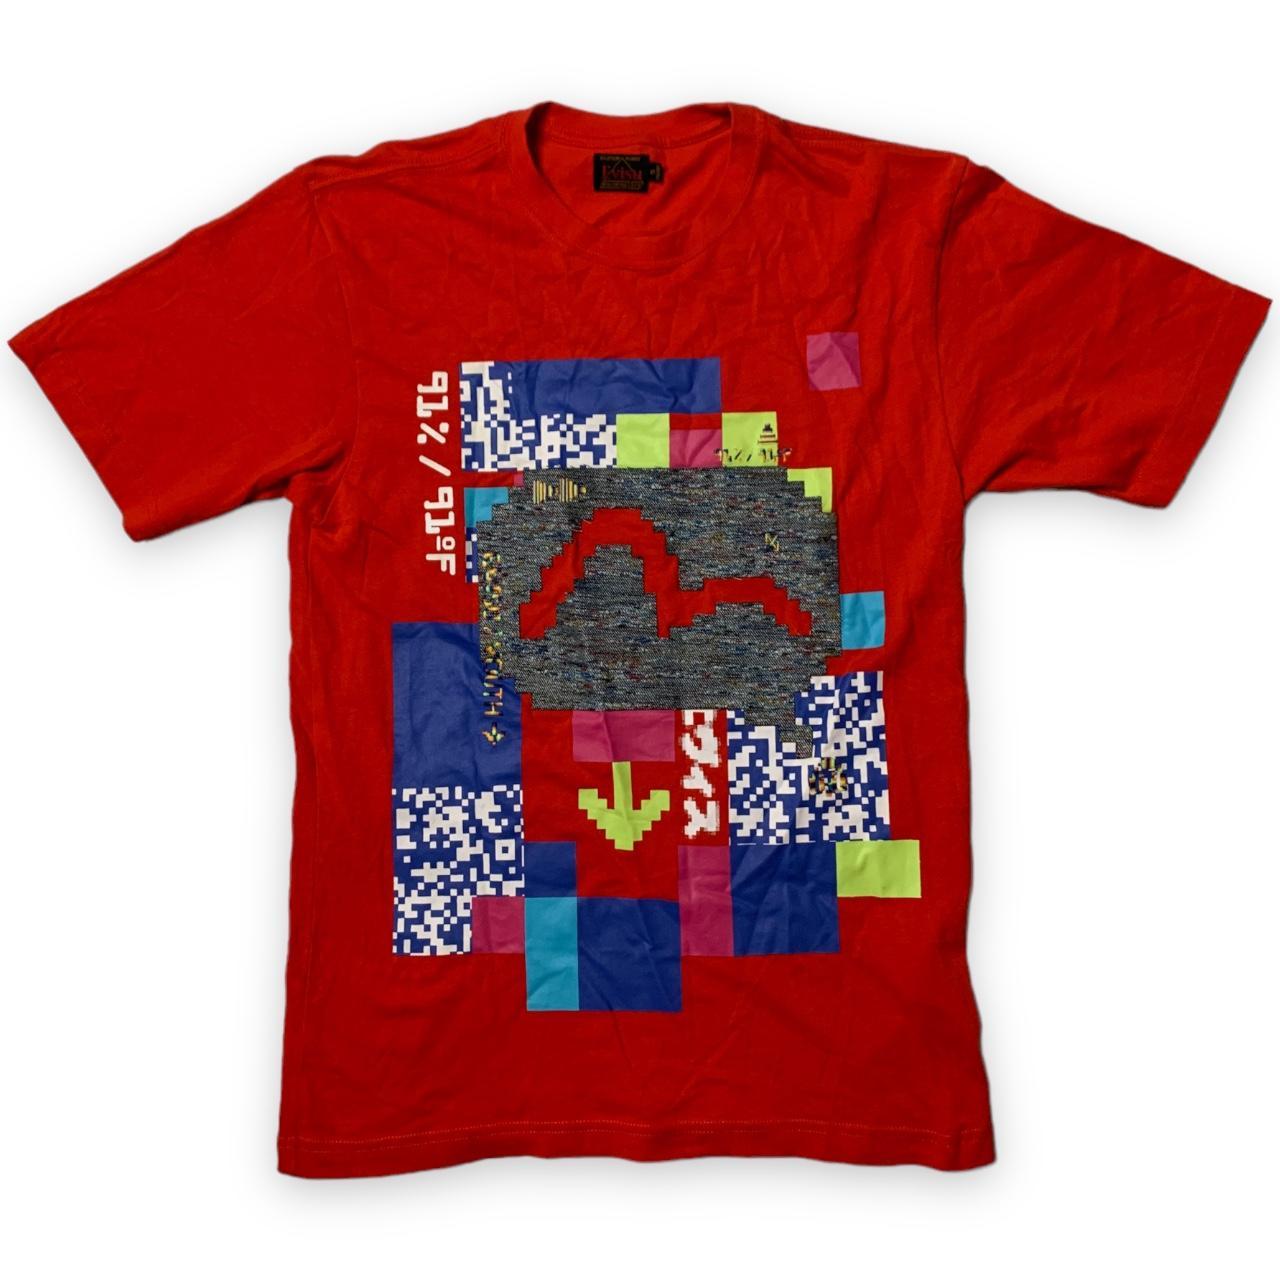 Evisu T-Shirt (S)